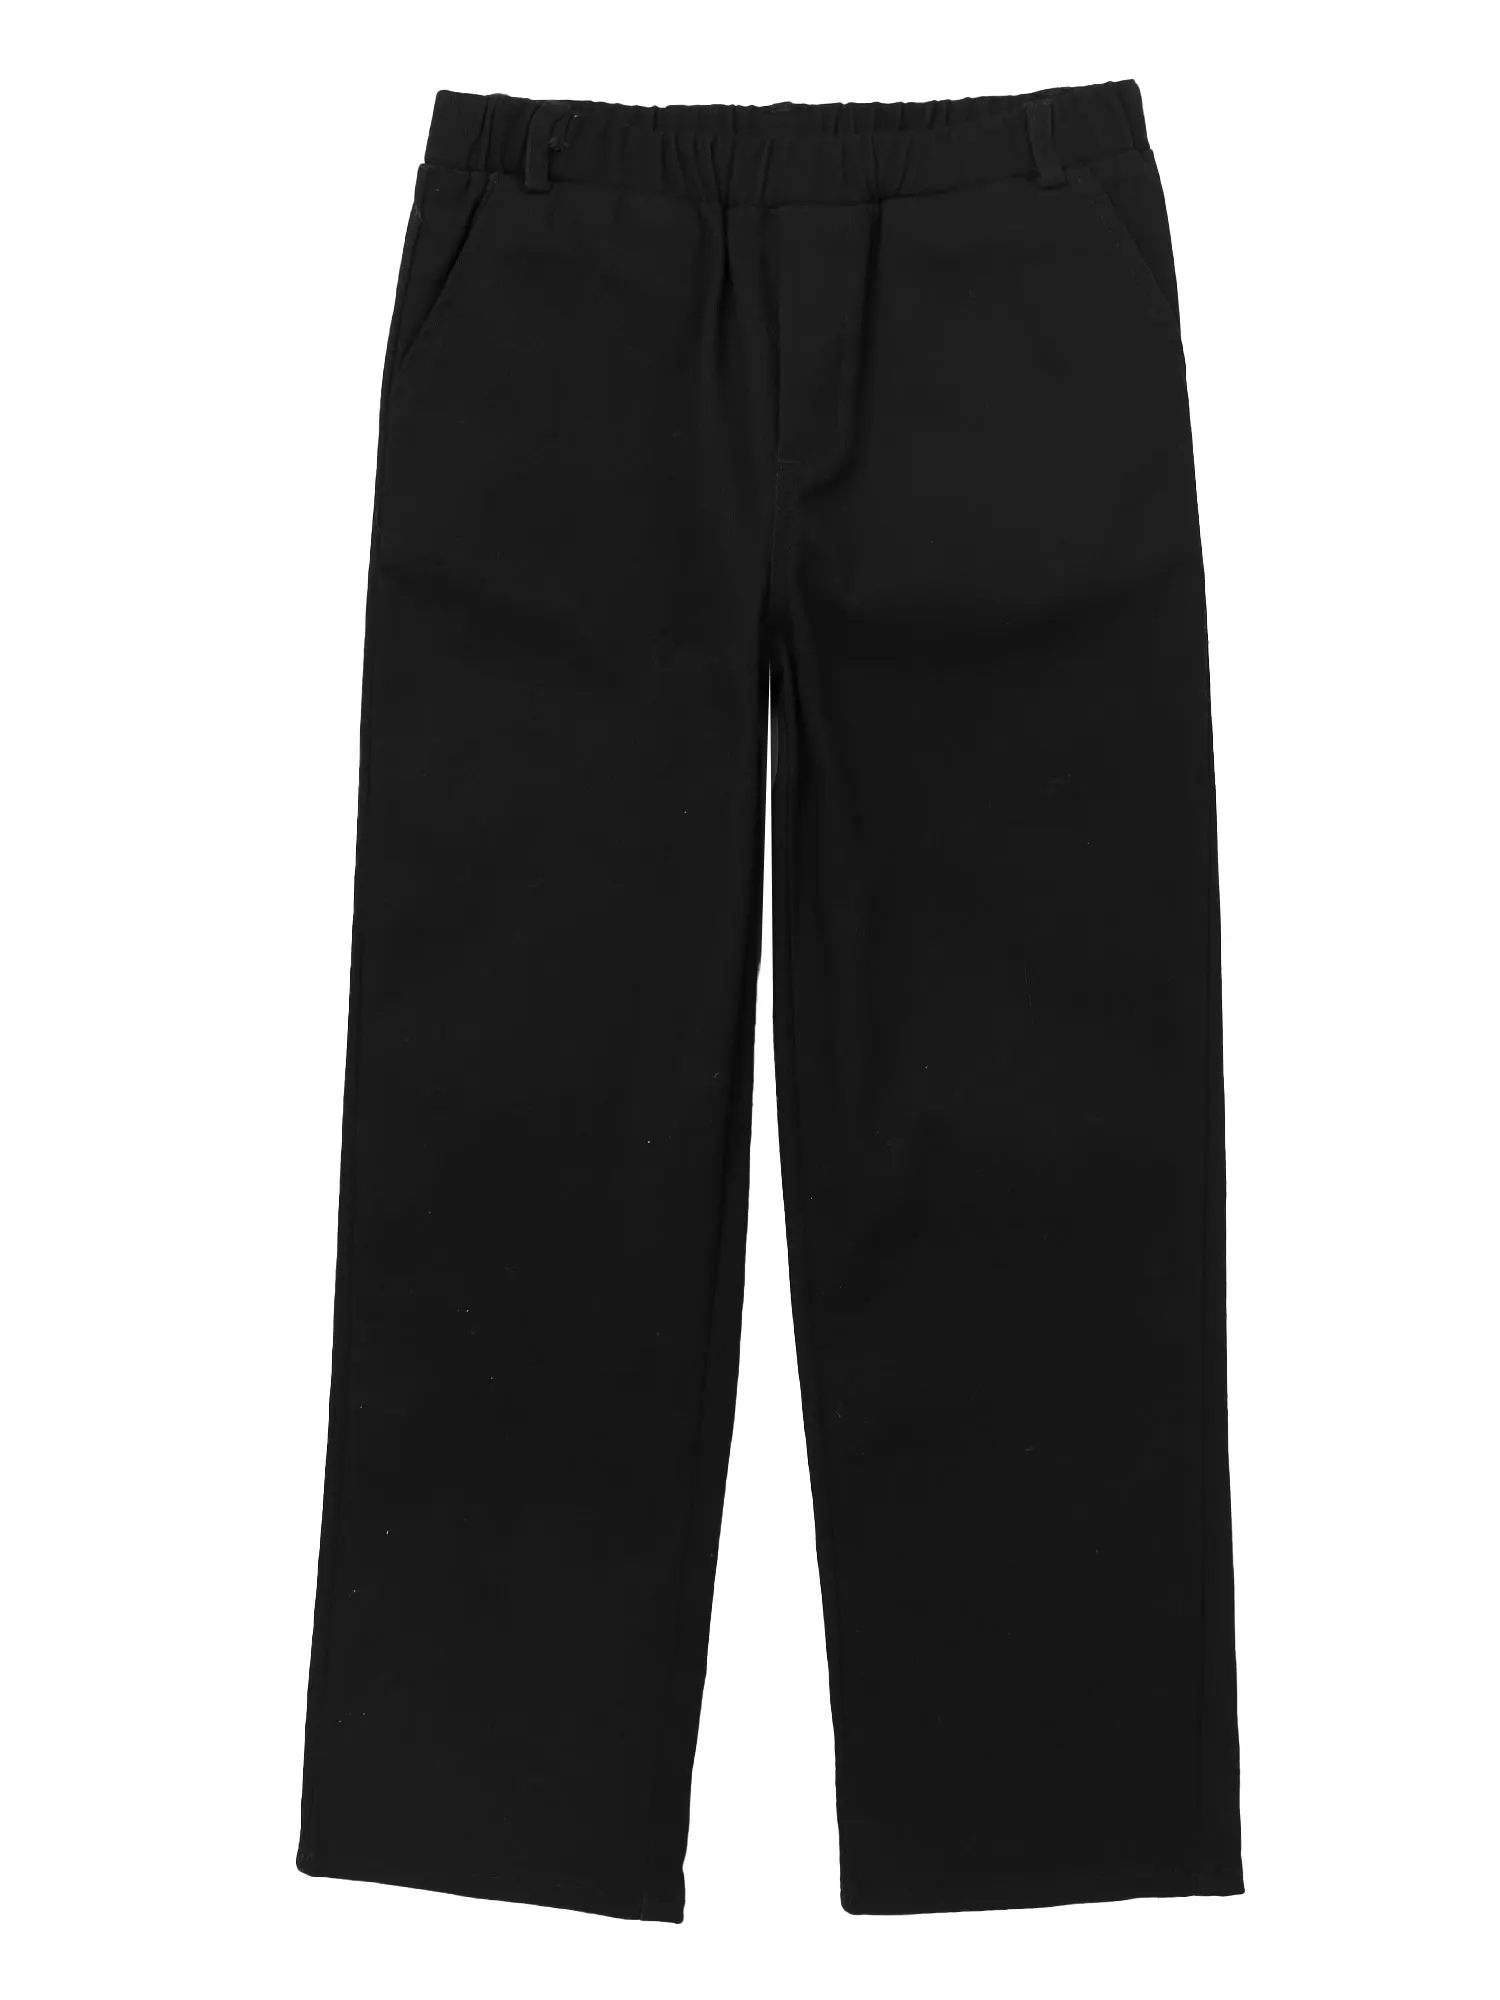 Wholesale Boys' Uniform Pants, Khaki, Size 4, Double Knee - DollarDays